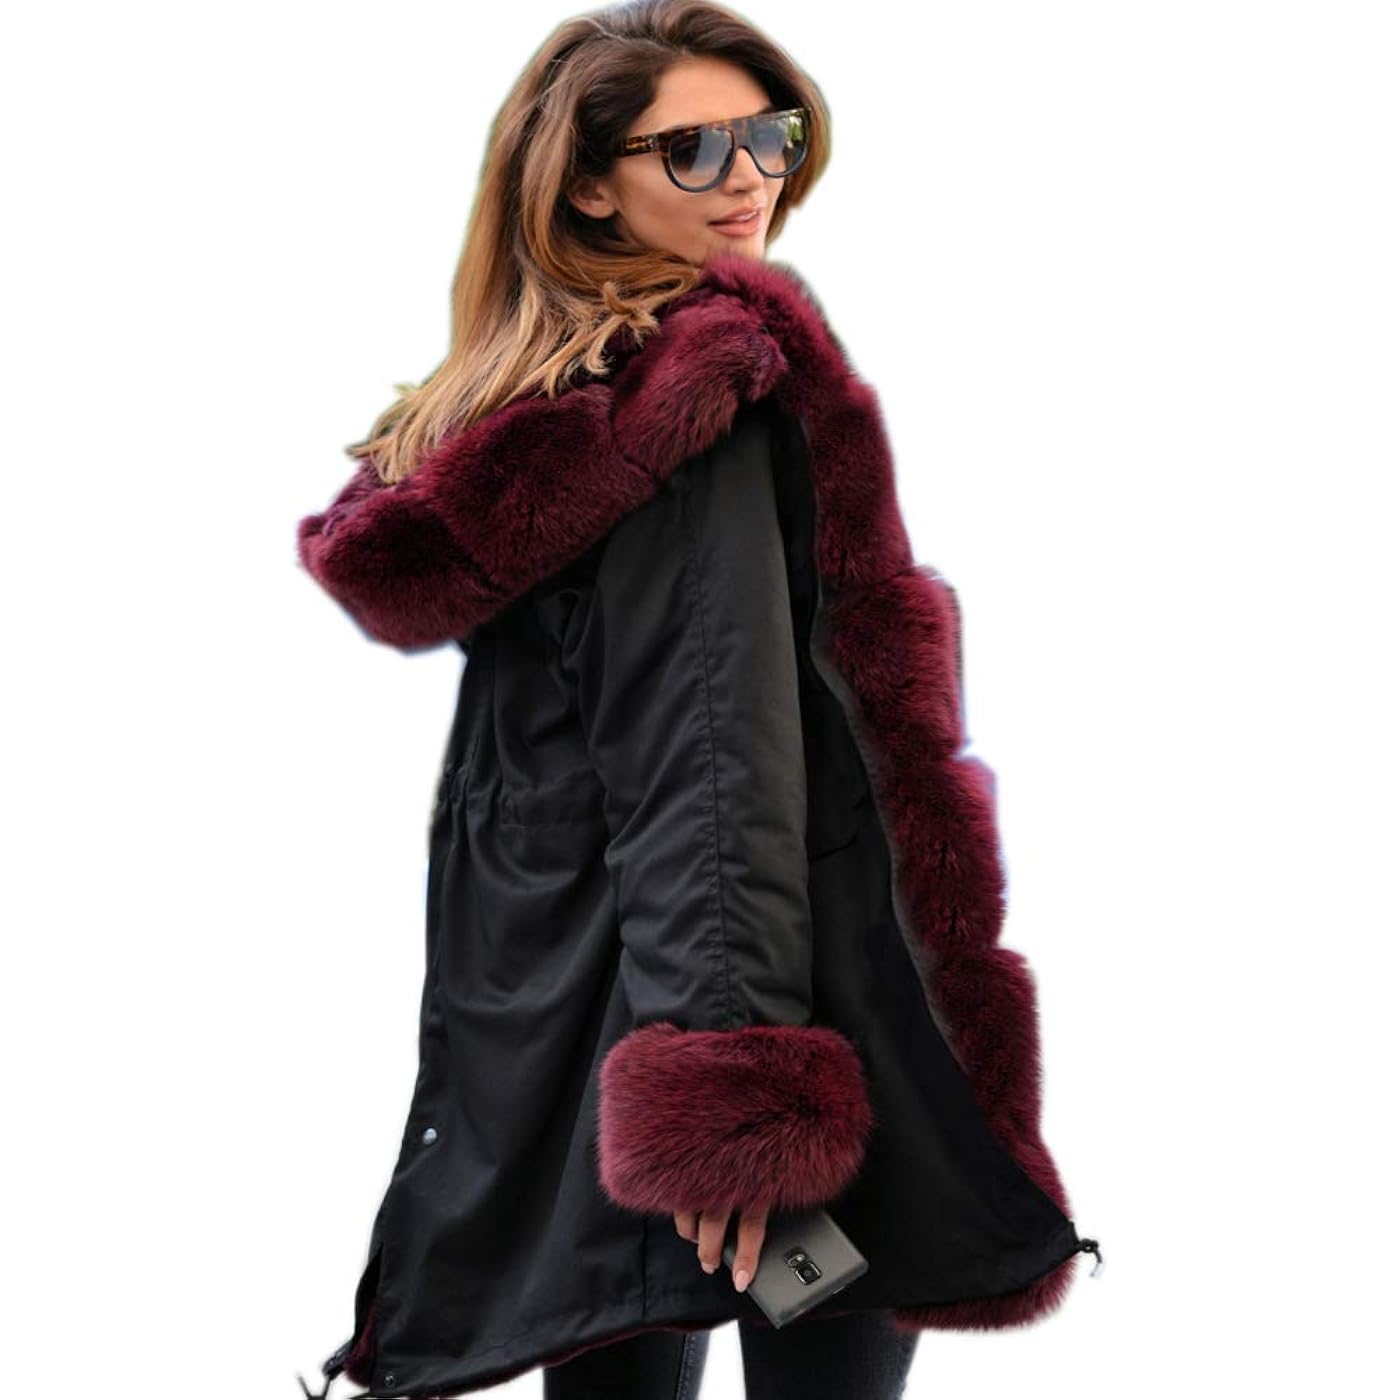 Парка Aofur Long Warm Winter Faux Fur Collar Qulited Women's, черный/бордовый женская куртка на хлопковом наполнителе длинная облегающая парка с меховым воротником и капюшоном зима 2019